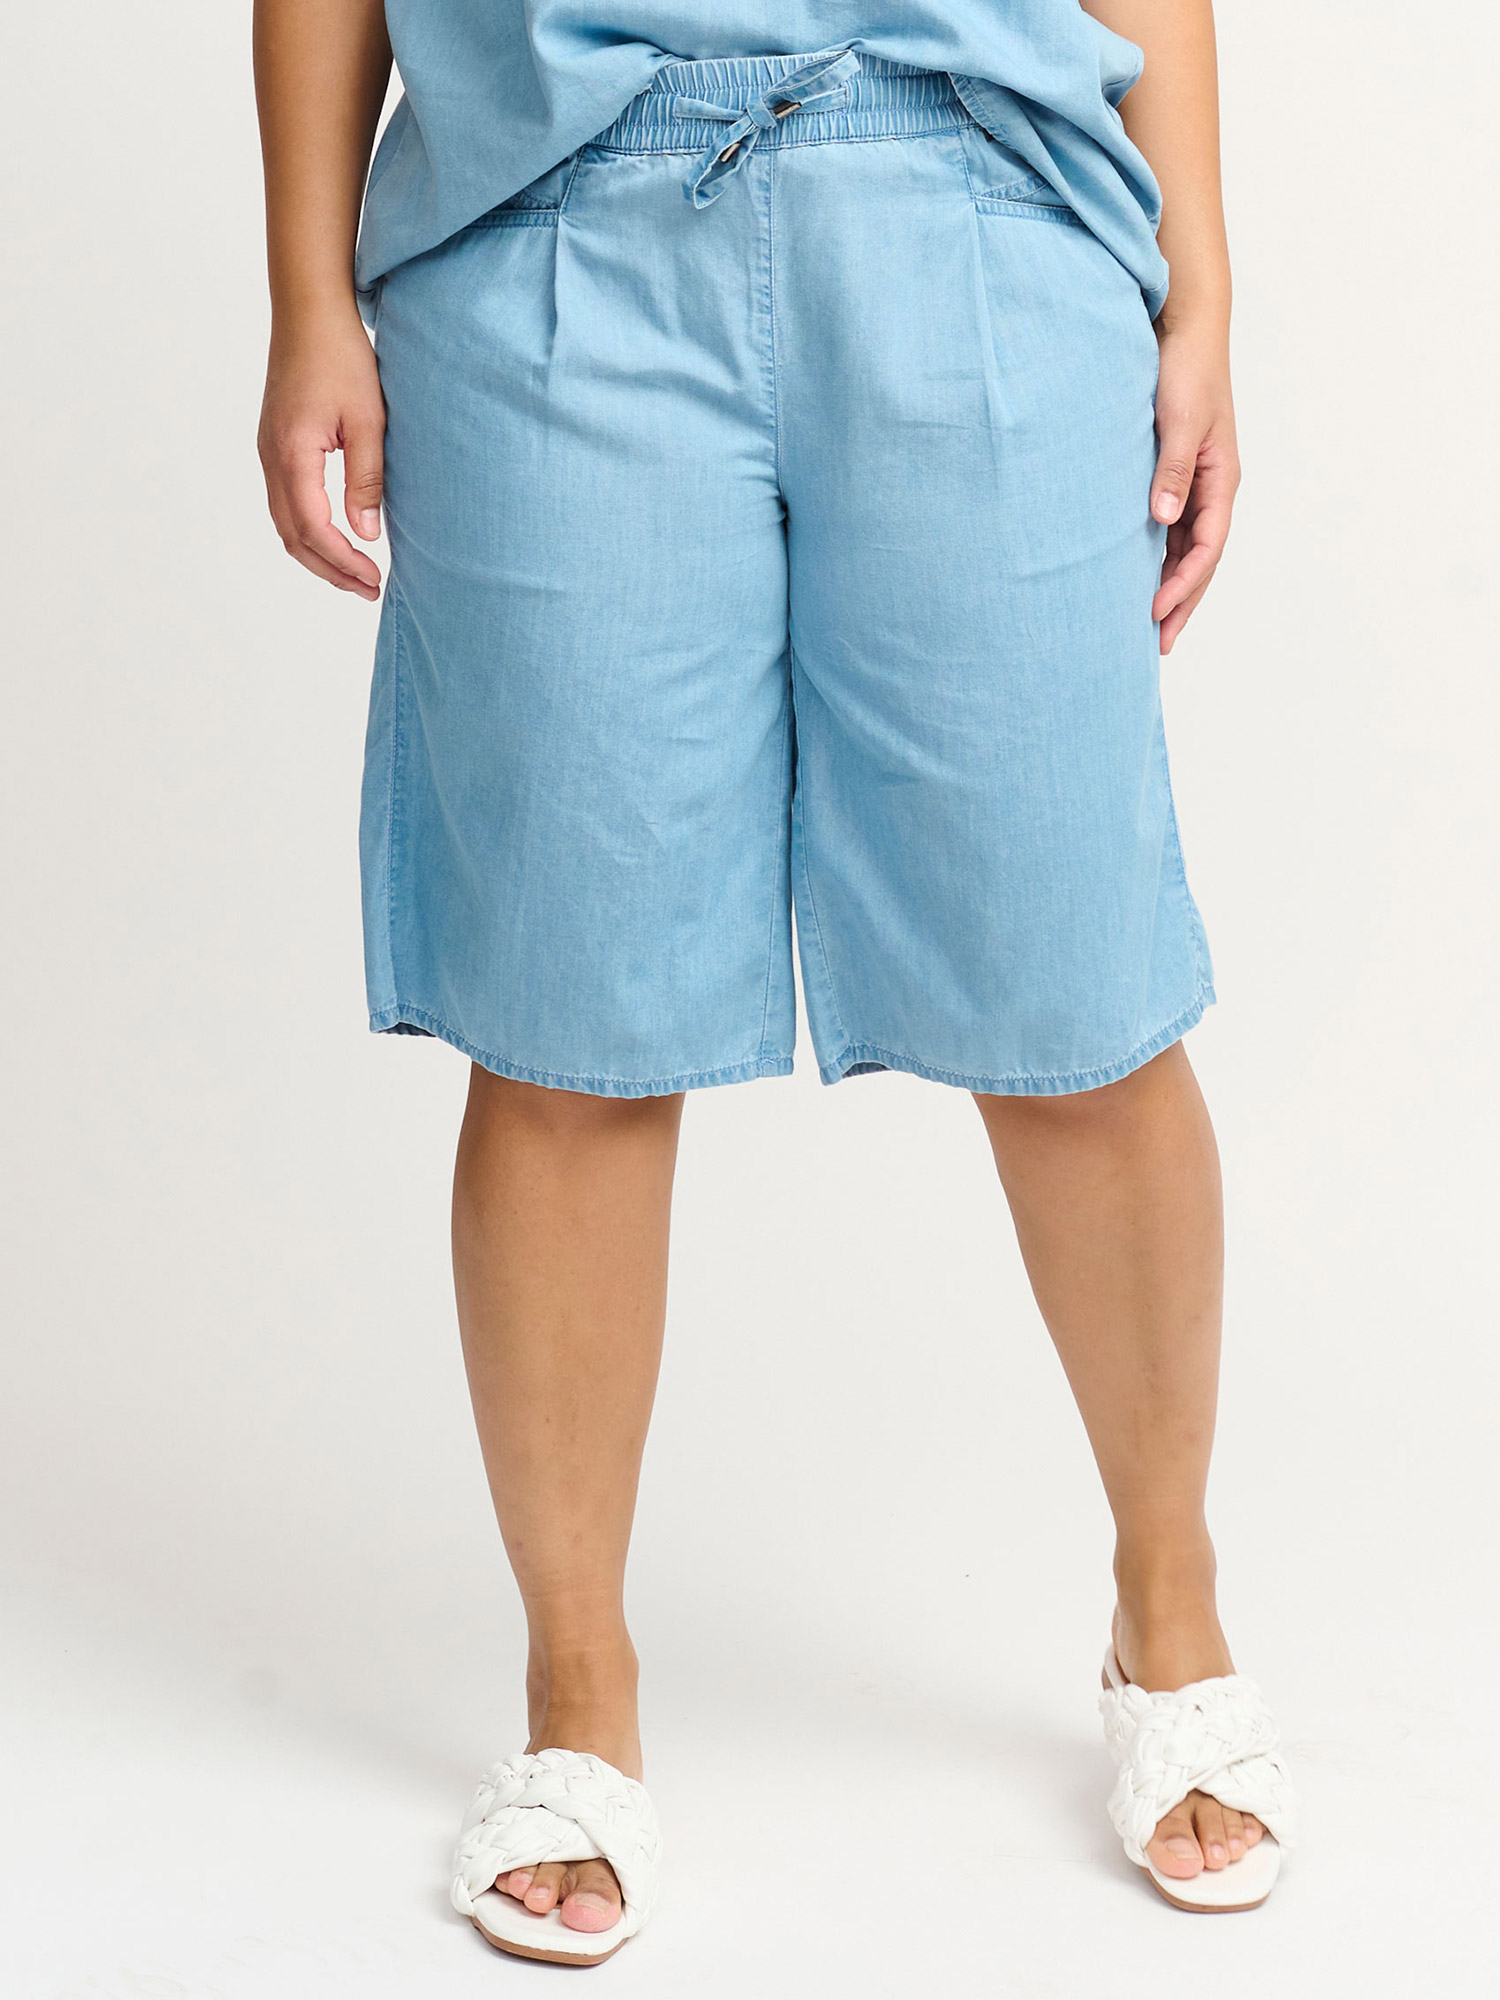 Lækre blå shorts i let kvalitet  fra Adia